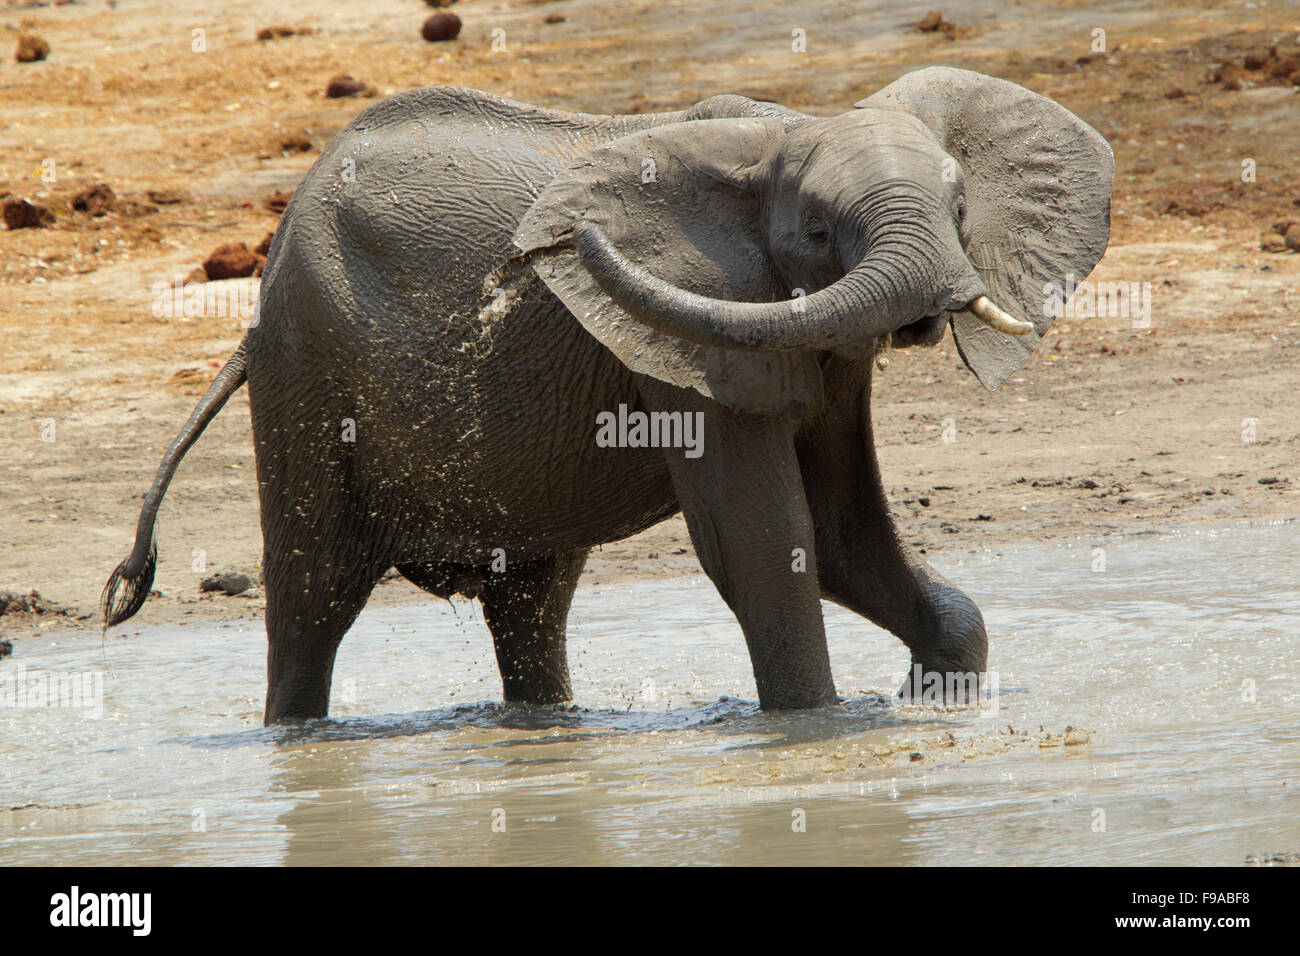 African elephant having a mud bath, Mana Pools, Zimbabwe Stock Photo